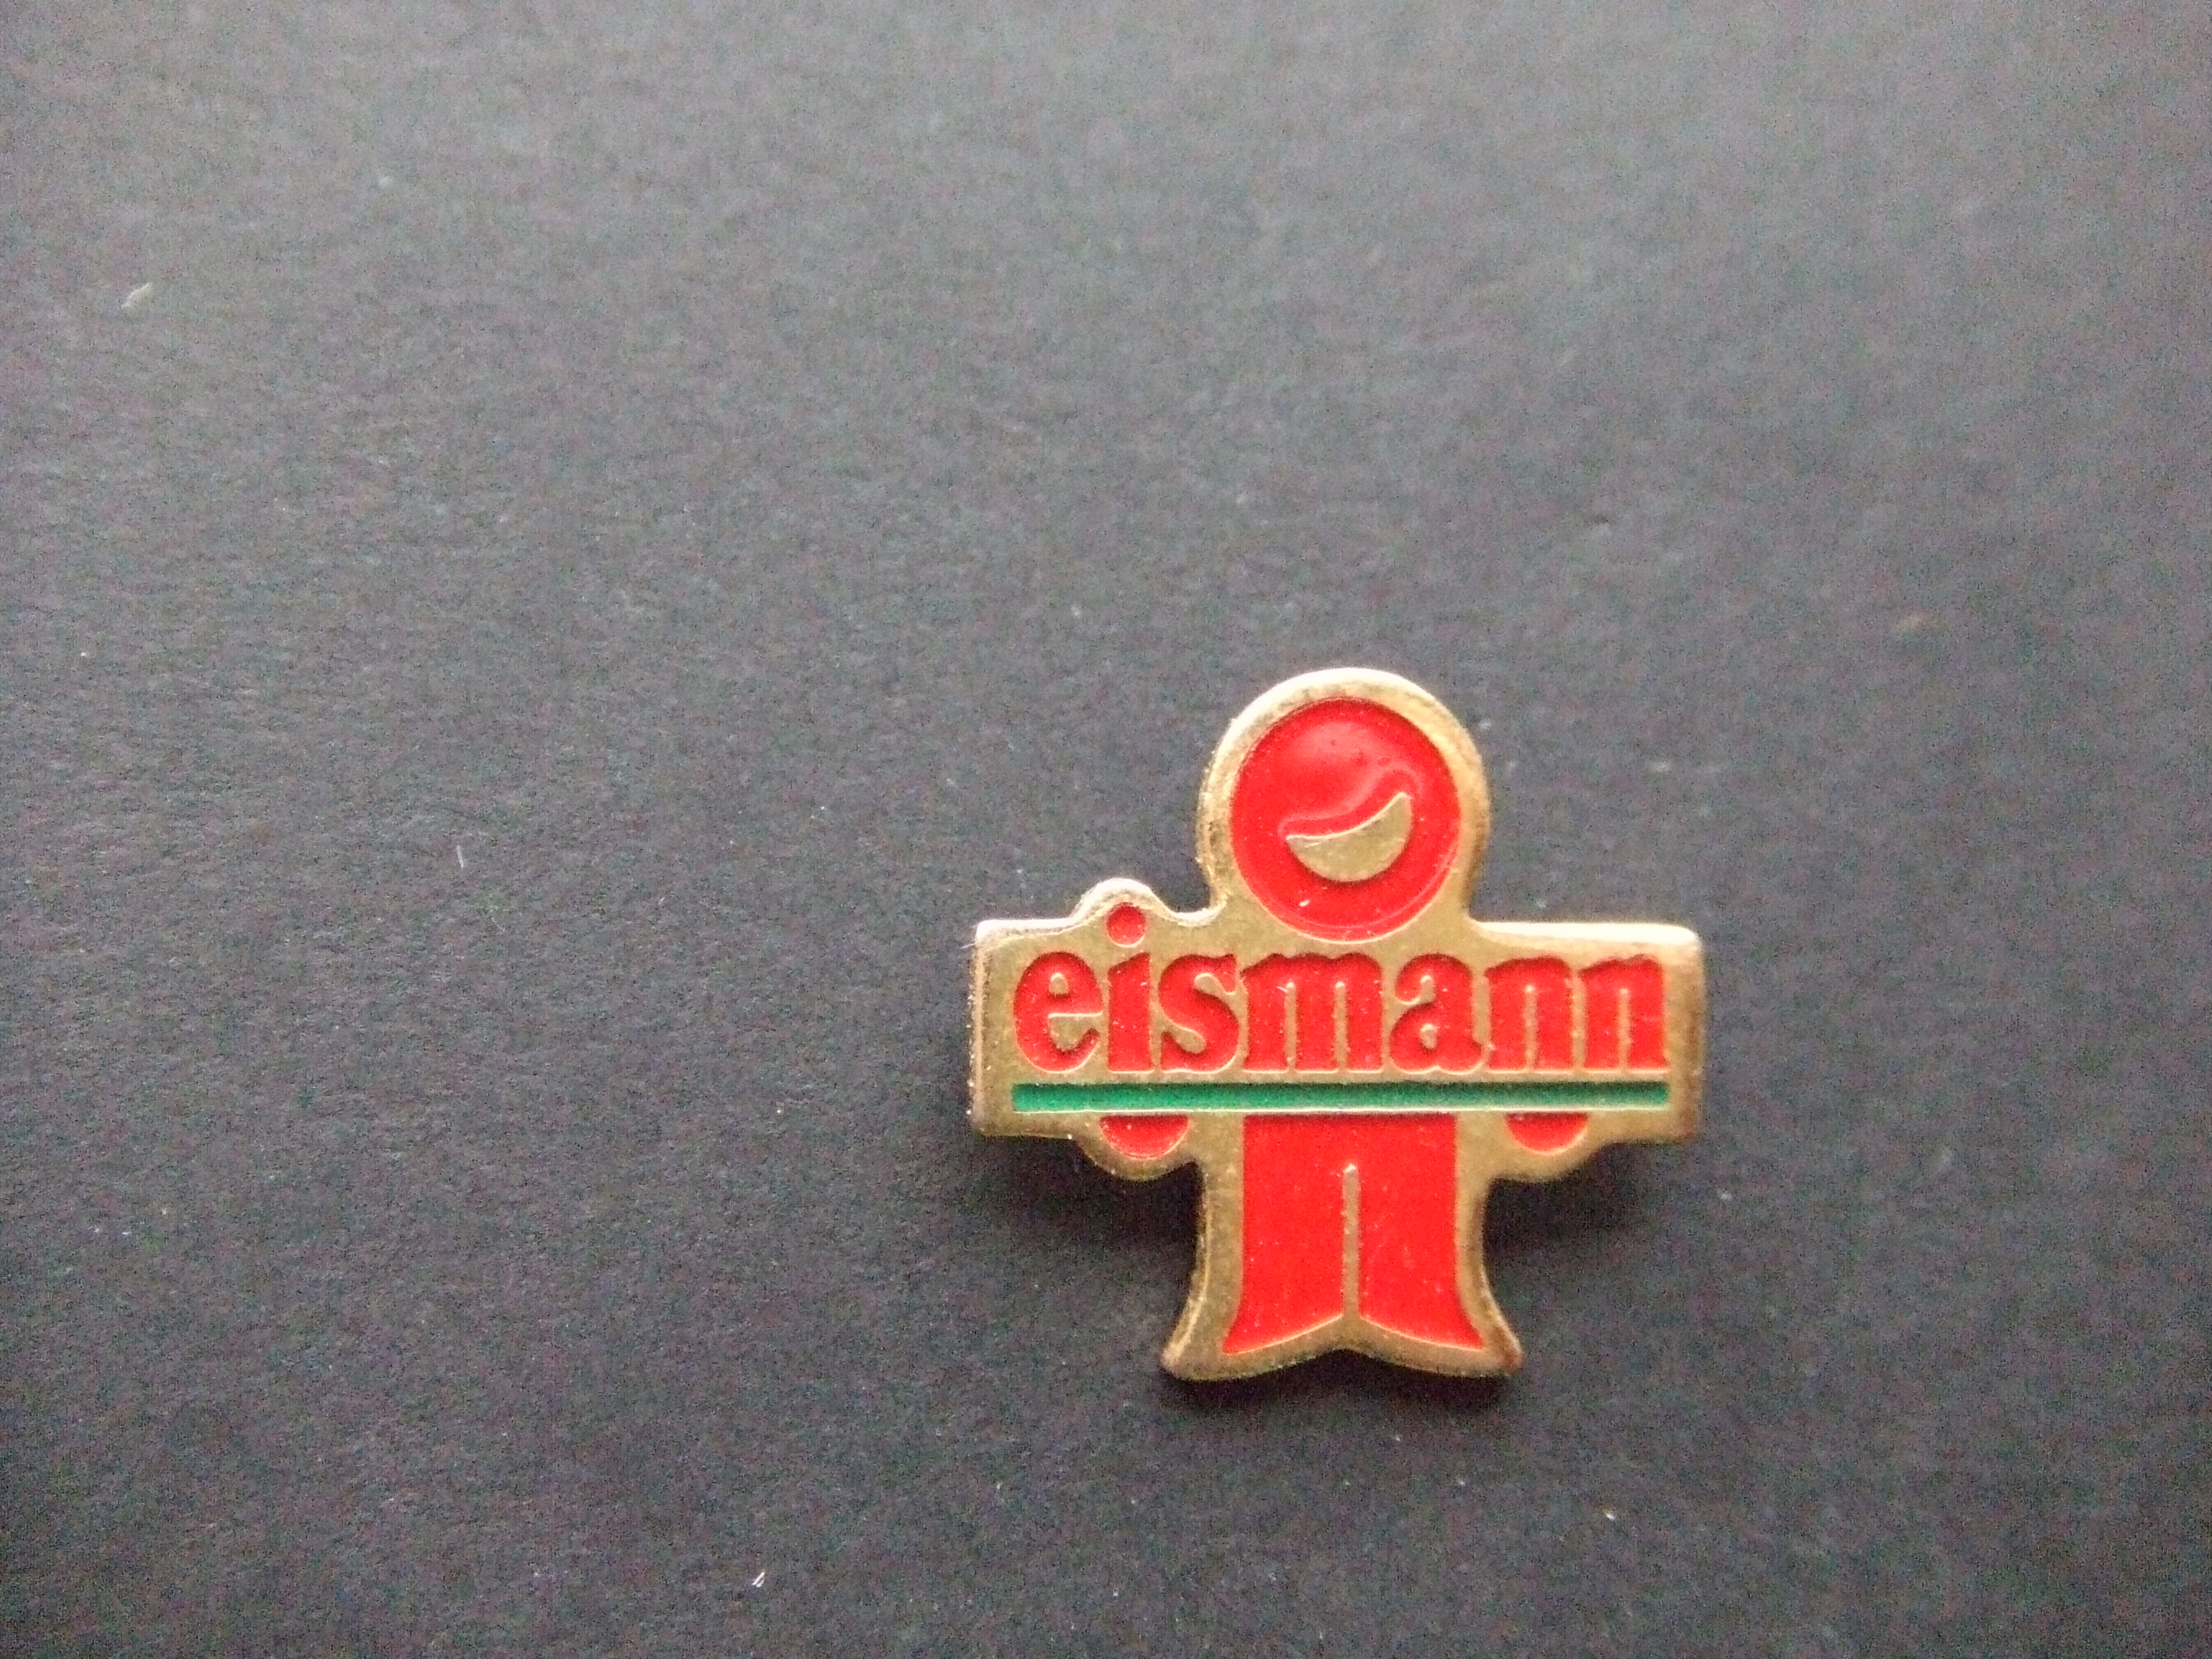 Eisman leverancier diepvriesproducten, Duiven-Gelderland